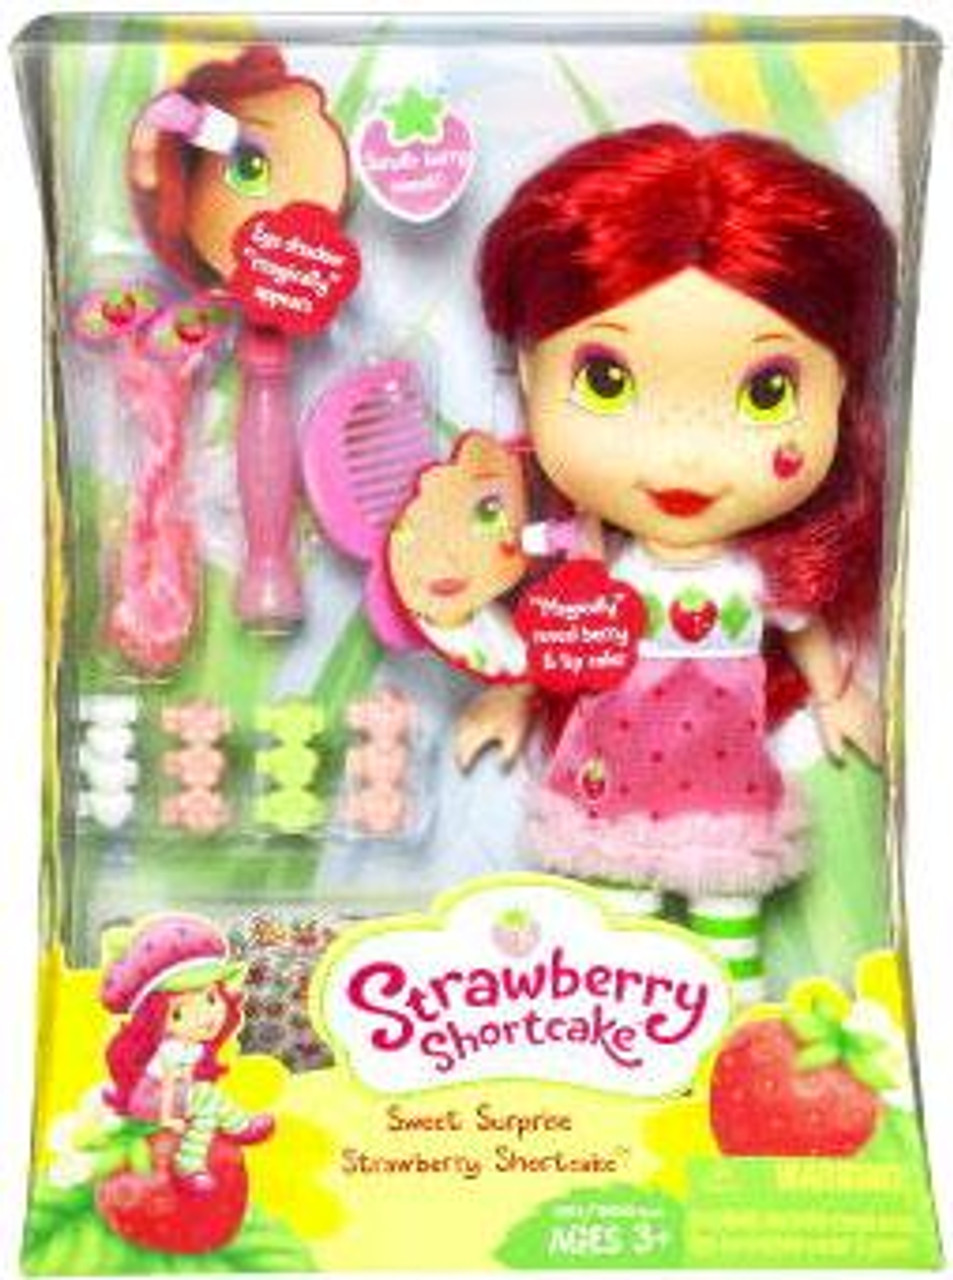 Strawberry Shortcake Sweet Surprise Strawberry Shortcake Doll Hasbro Toys -  ToyWiz